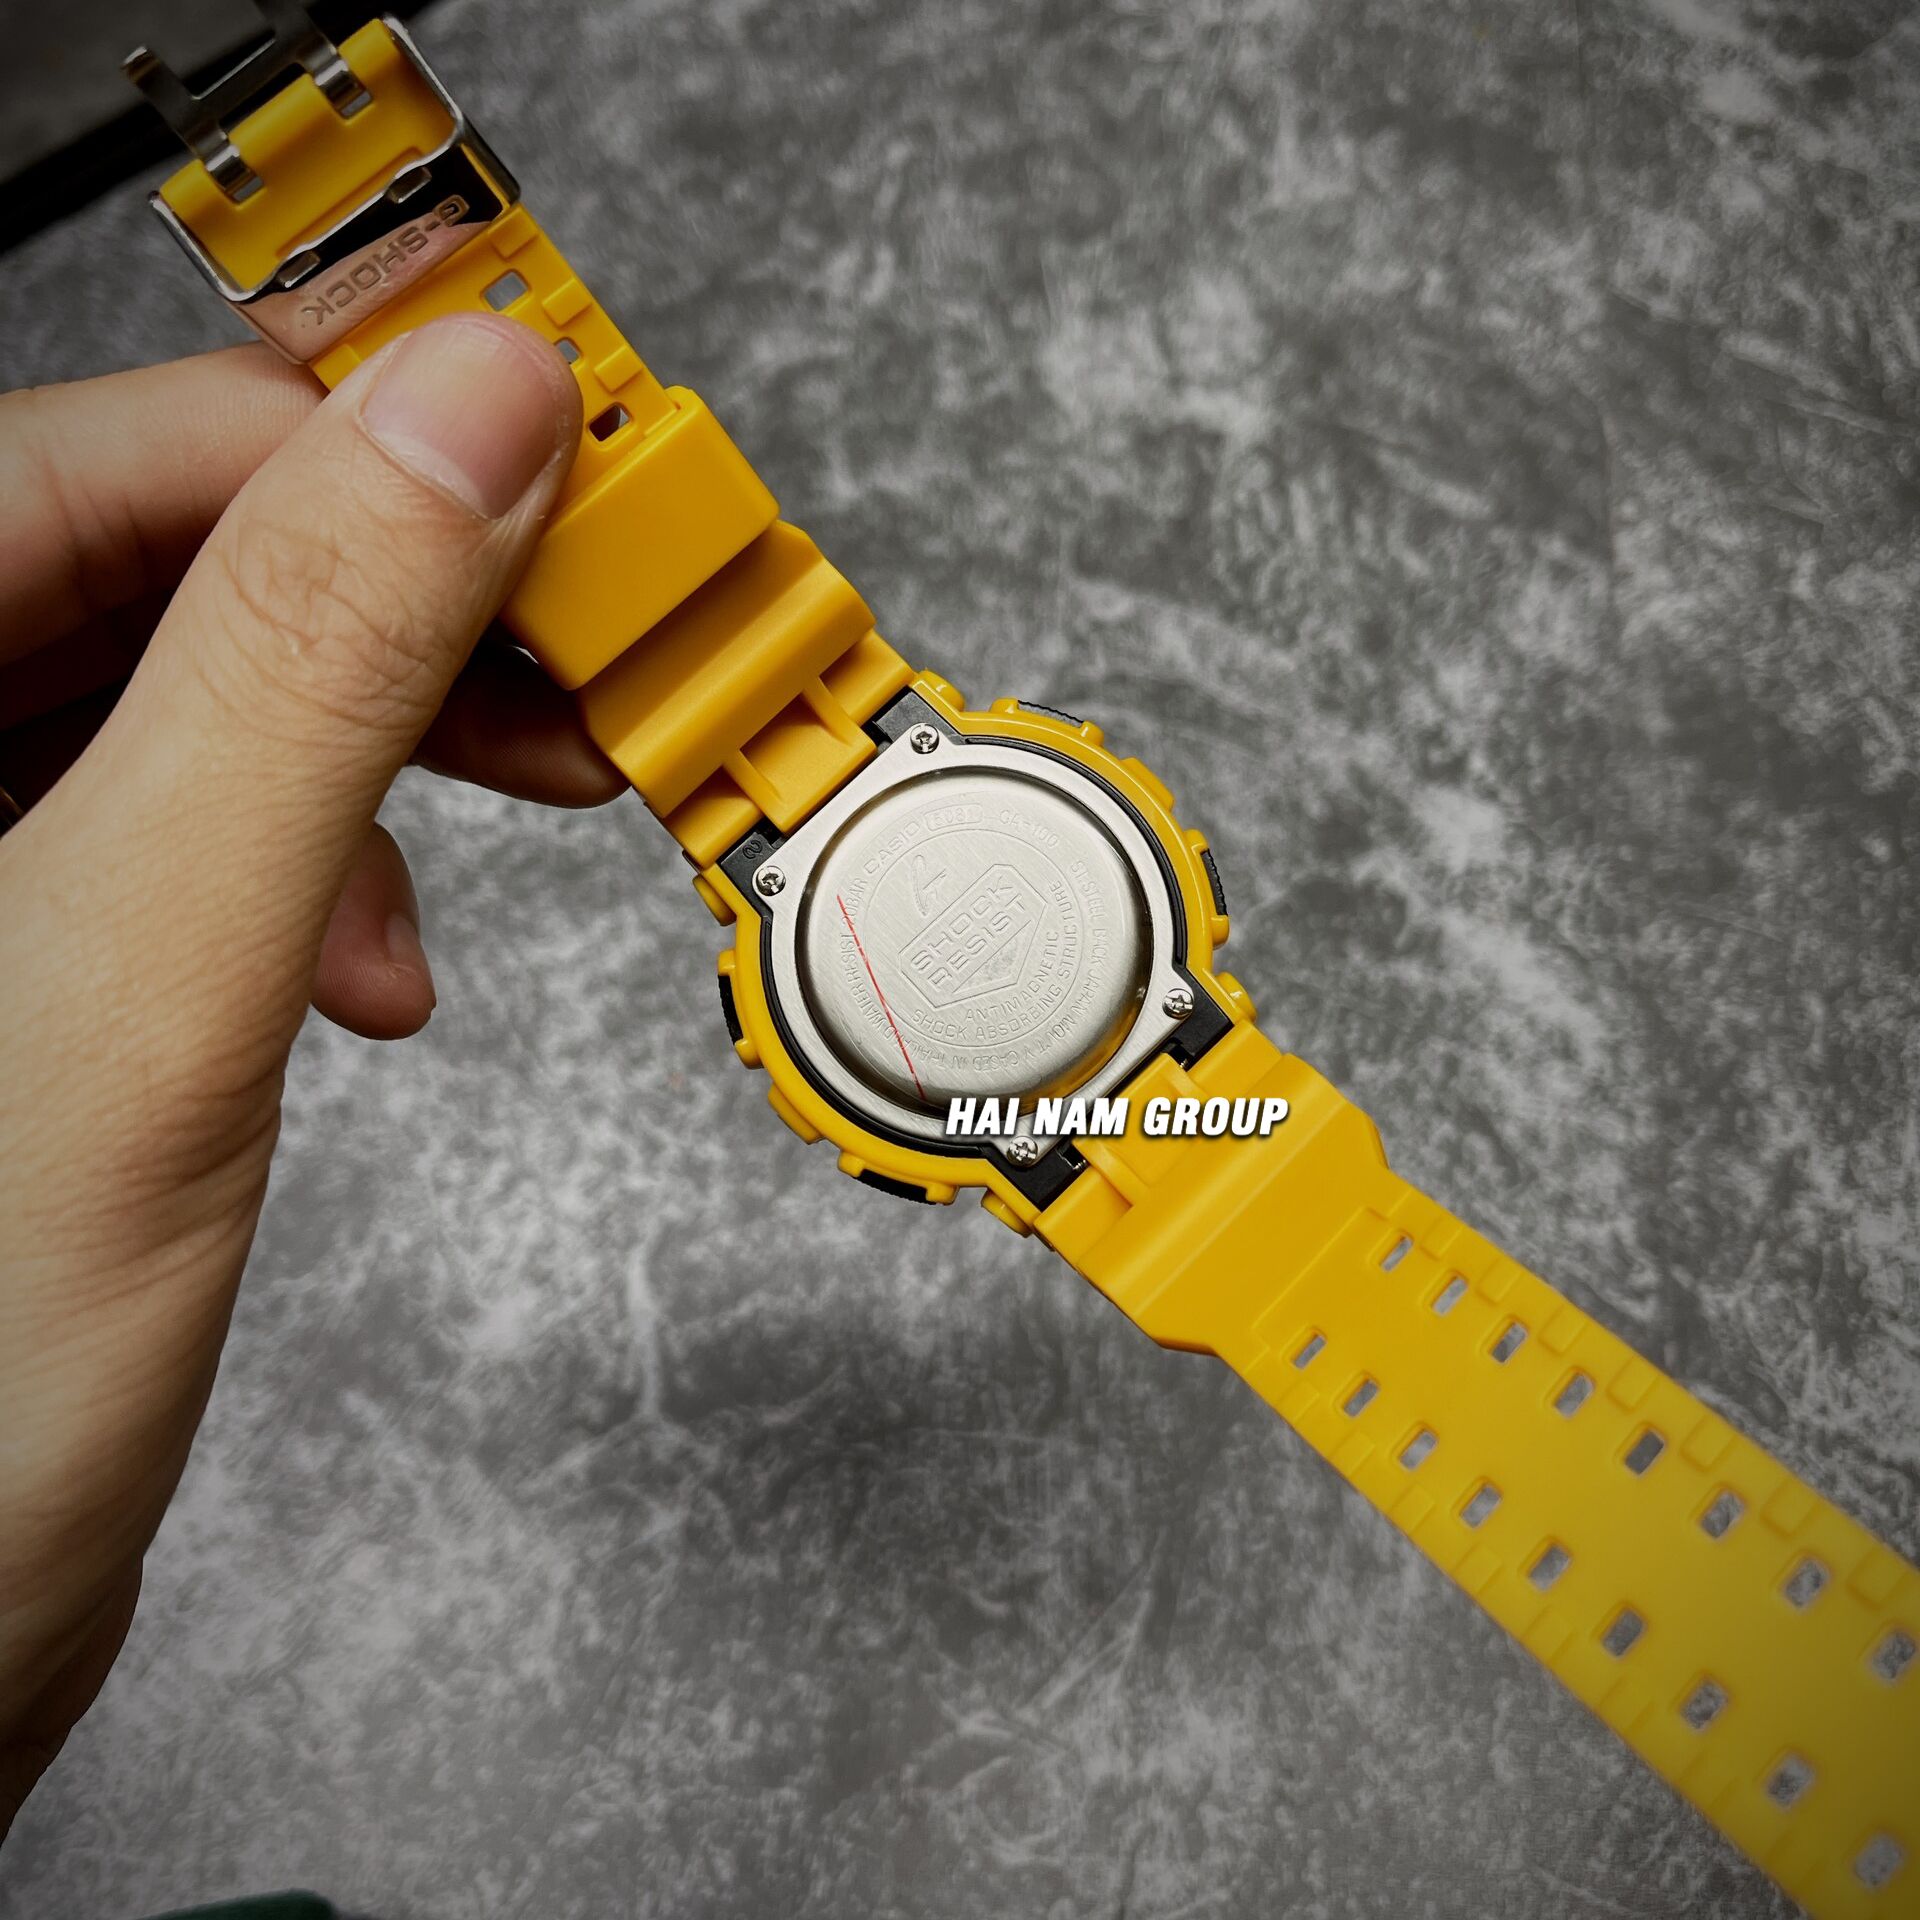 Đồng hồ nam nữ G-SHOCK GA-100A-9A REP 1:1 Vàng Mặt Đen tại Hải Nam Group 5